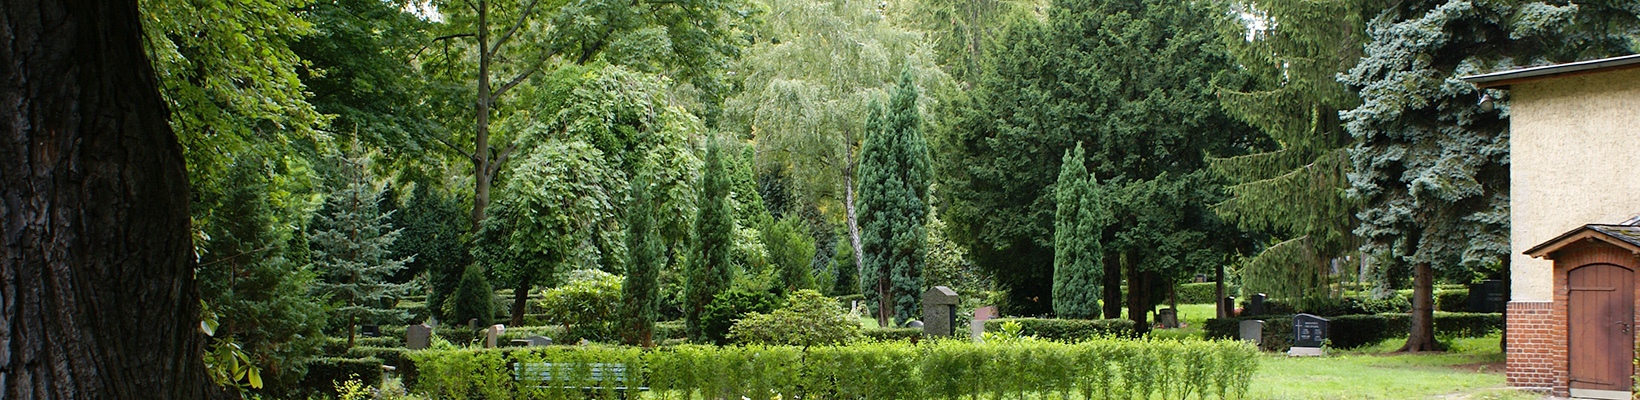 Friedhof St. Paul (Foto © Birgit Böttger)